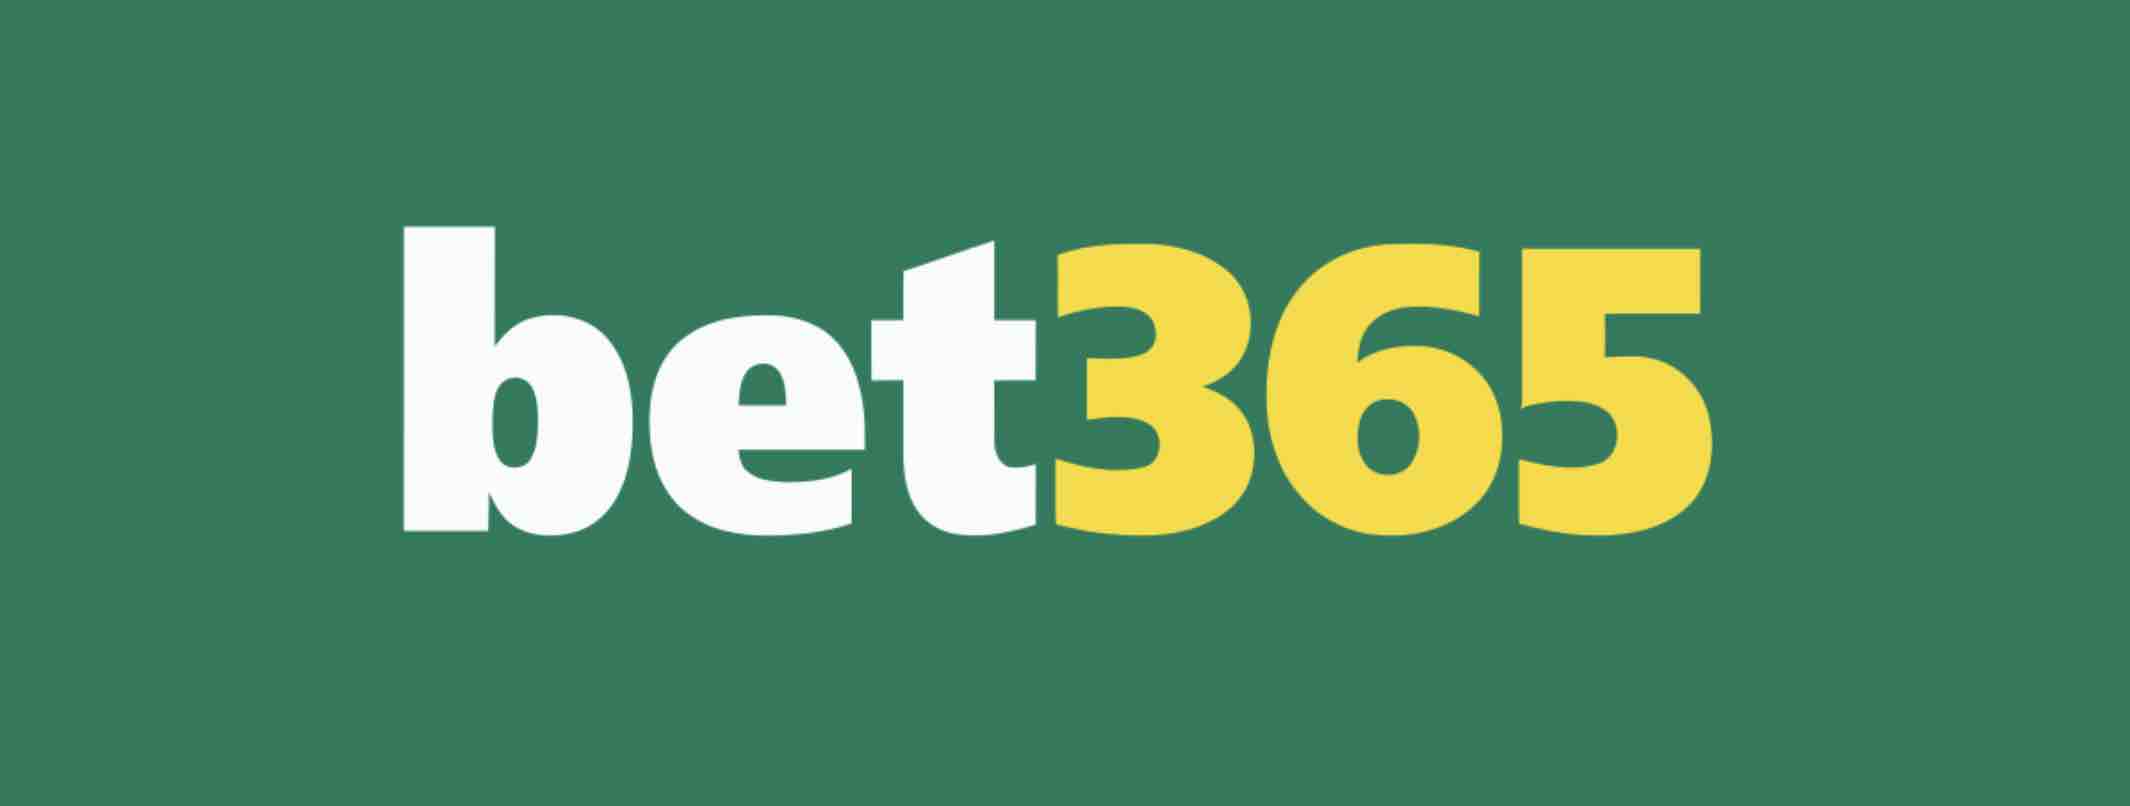 melhor jogo para ganhar dinheiro no bet365